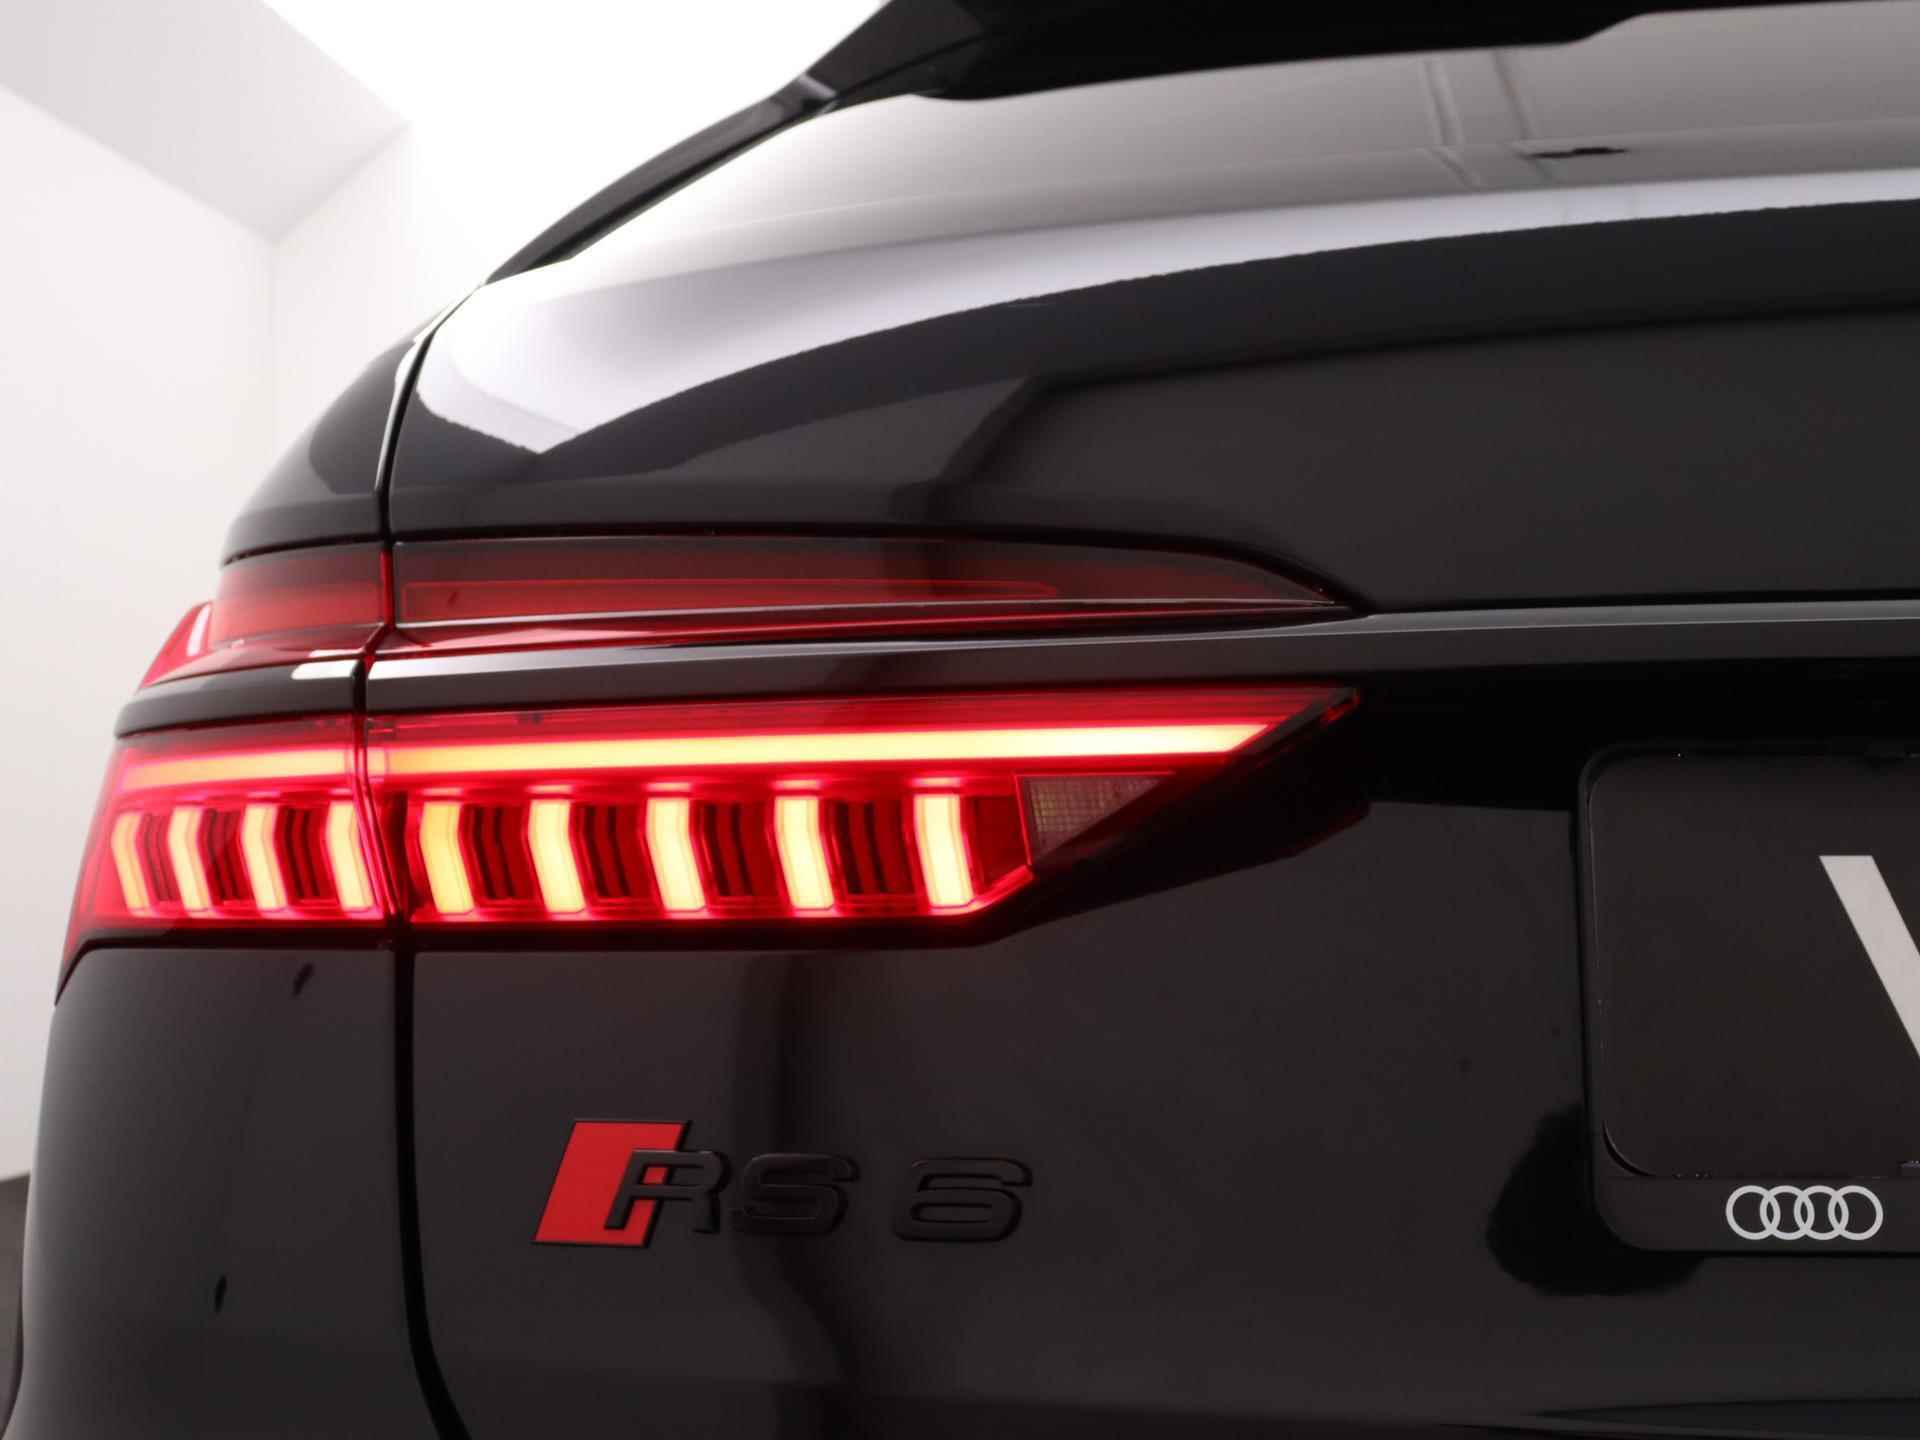 Audi RS6 TFSI quattro 600 PK | Head-up display | Bang & Olufsen Soundsystem | 22 inch lm velgen | RS Dynamic Pakket Plus | RS Design pakket Rood |Optiekpakket Zwart Plus | Panorama dak | RS Sportuitlaat | Keramische remschijven Rood | RS Sportonderstel Plus | Servosluiting deuren | Nu € 36.129,- ACTIEKORTING! | DIRECT LEVERBAAR! | NIEUWE AUTO! | - 33/35